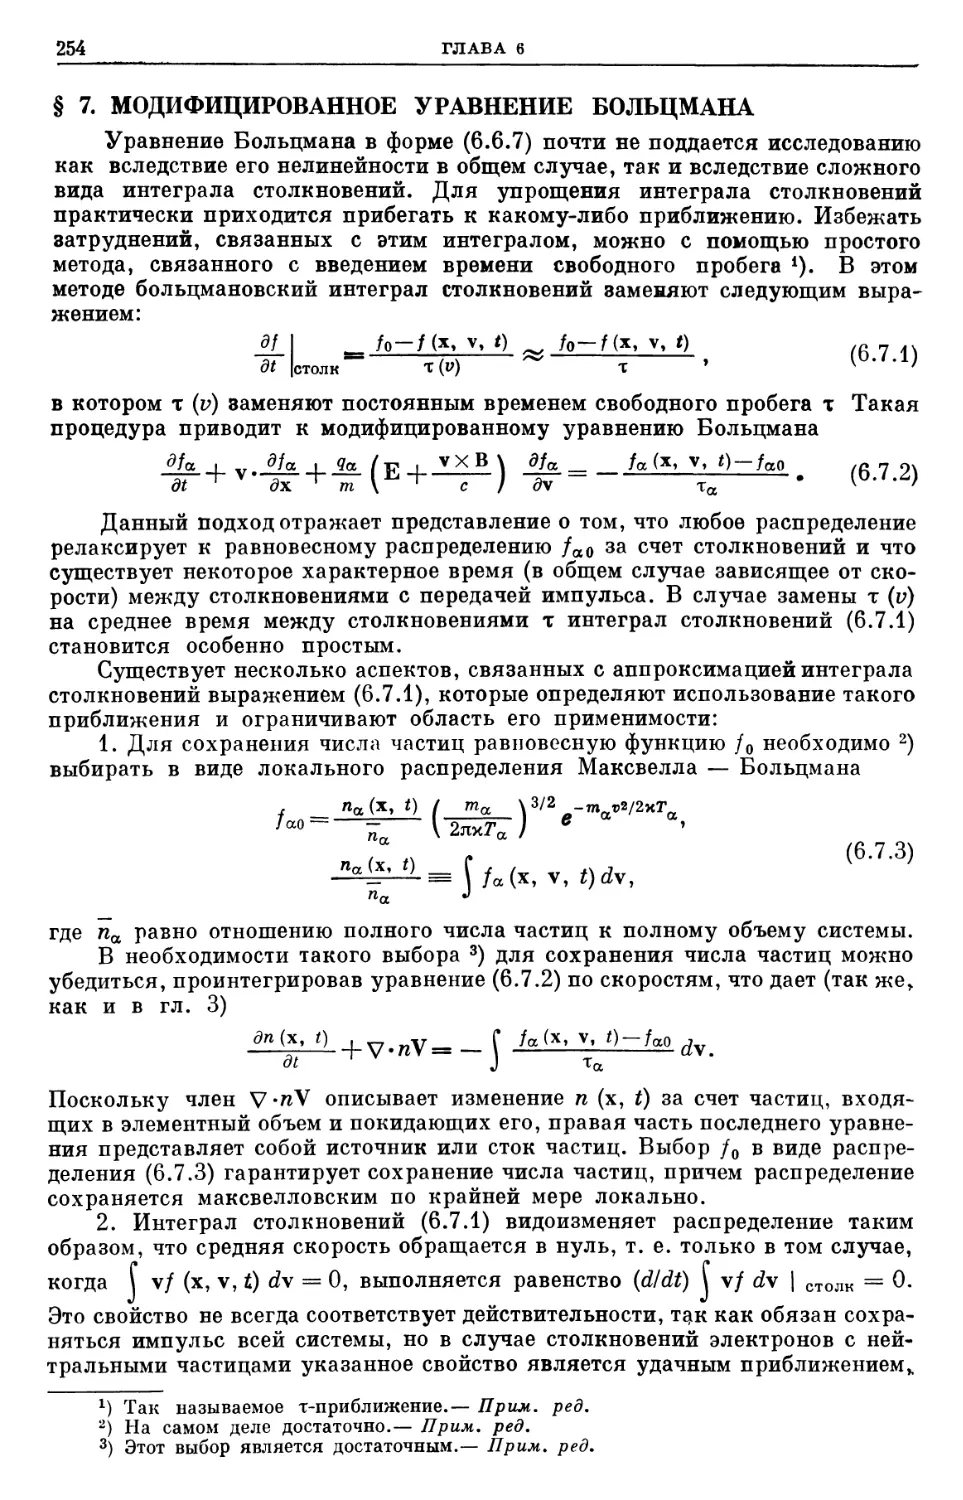 § 7. Модифицированное уравнение Больцмана